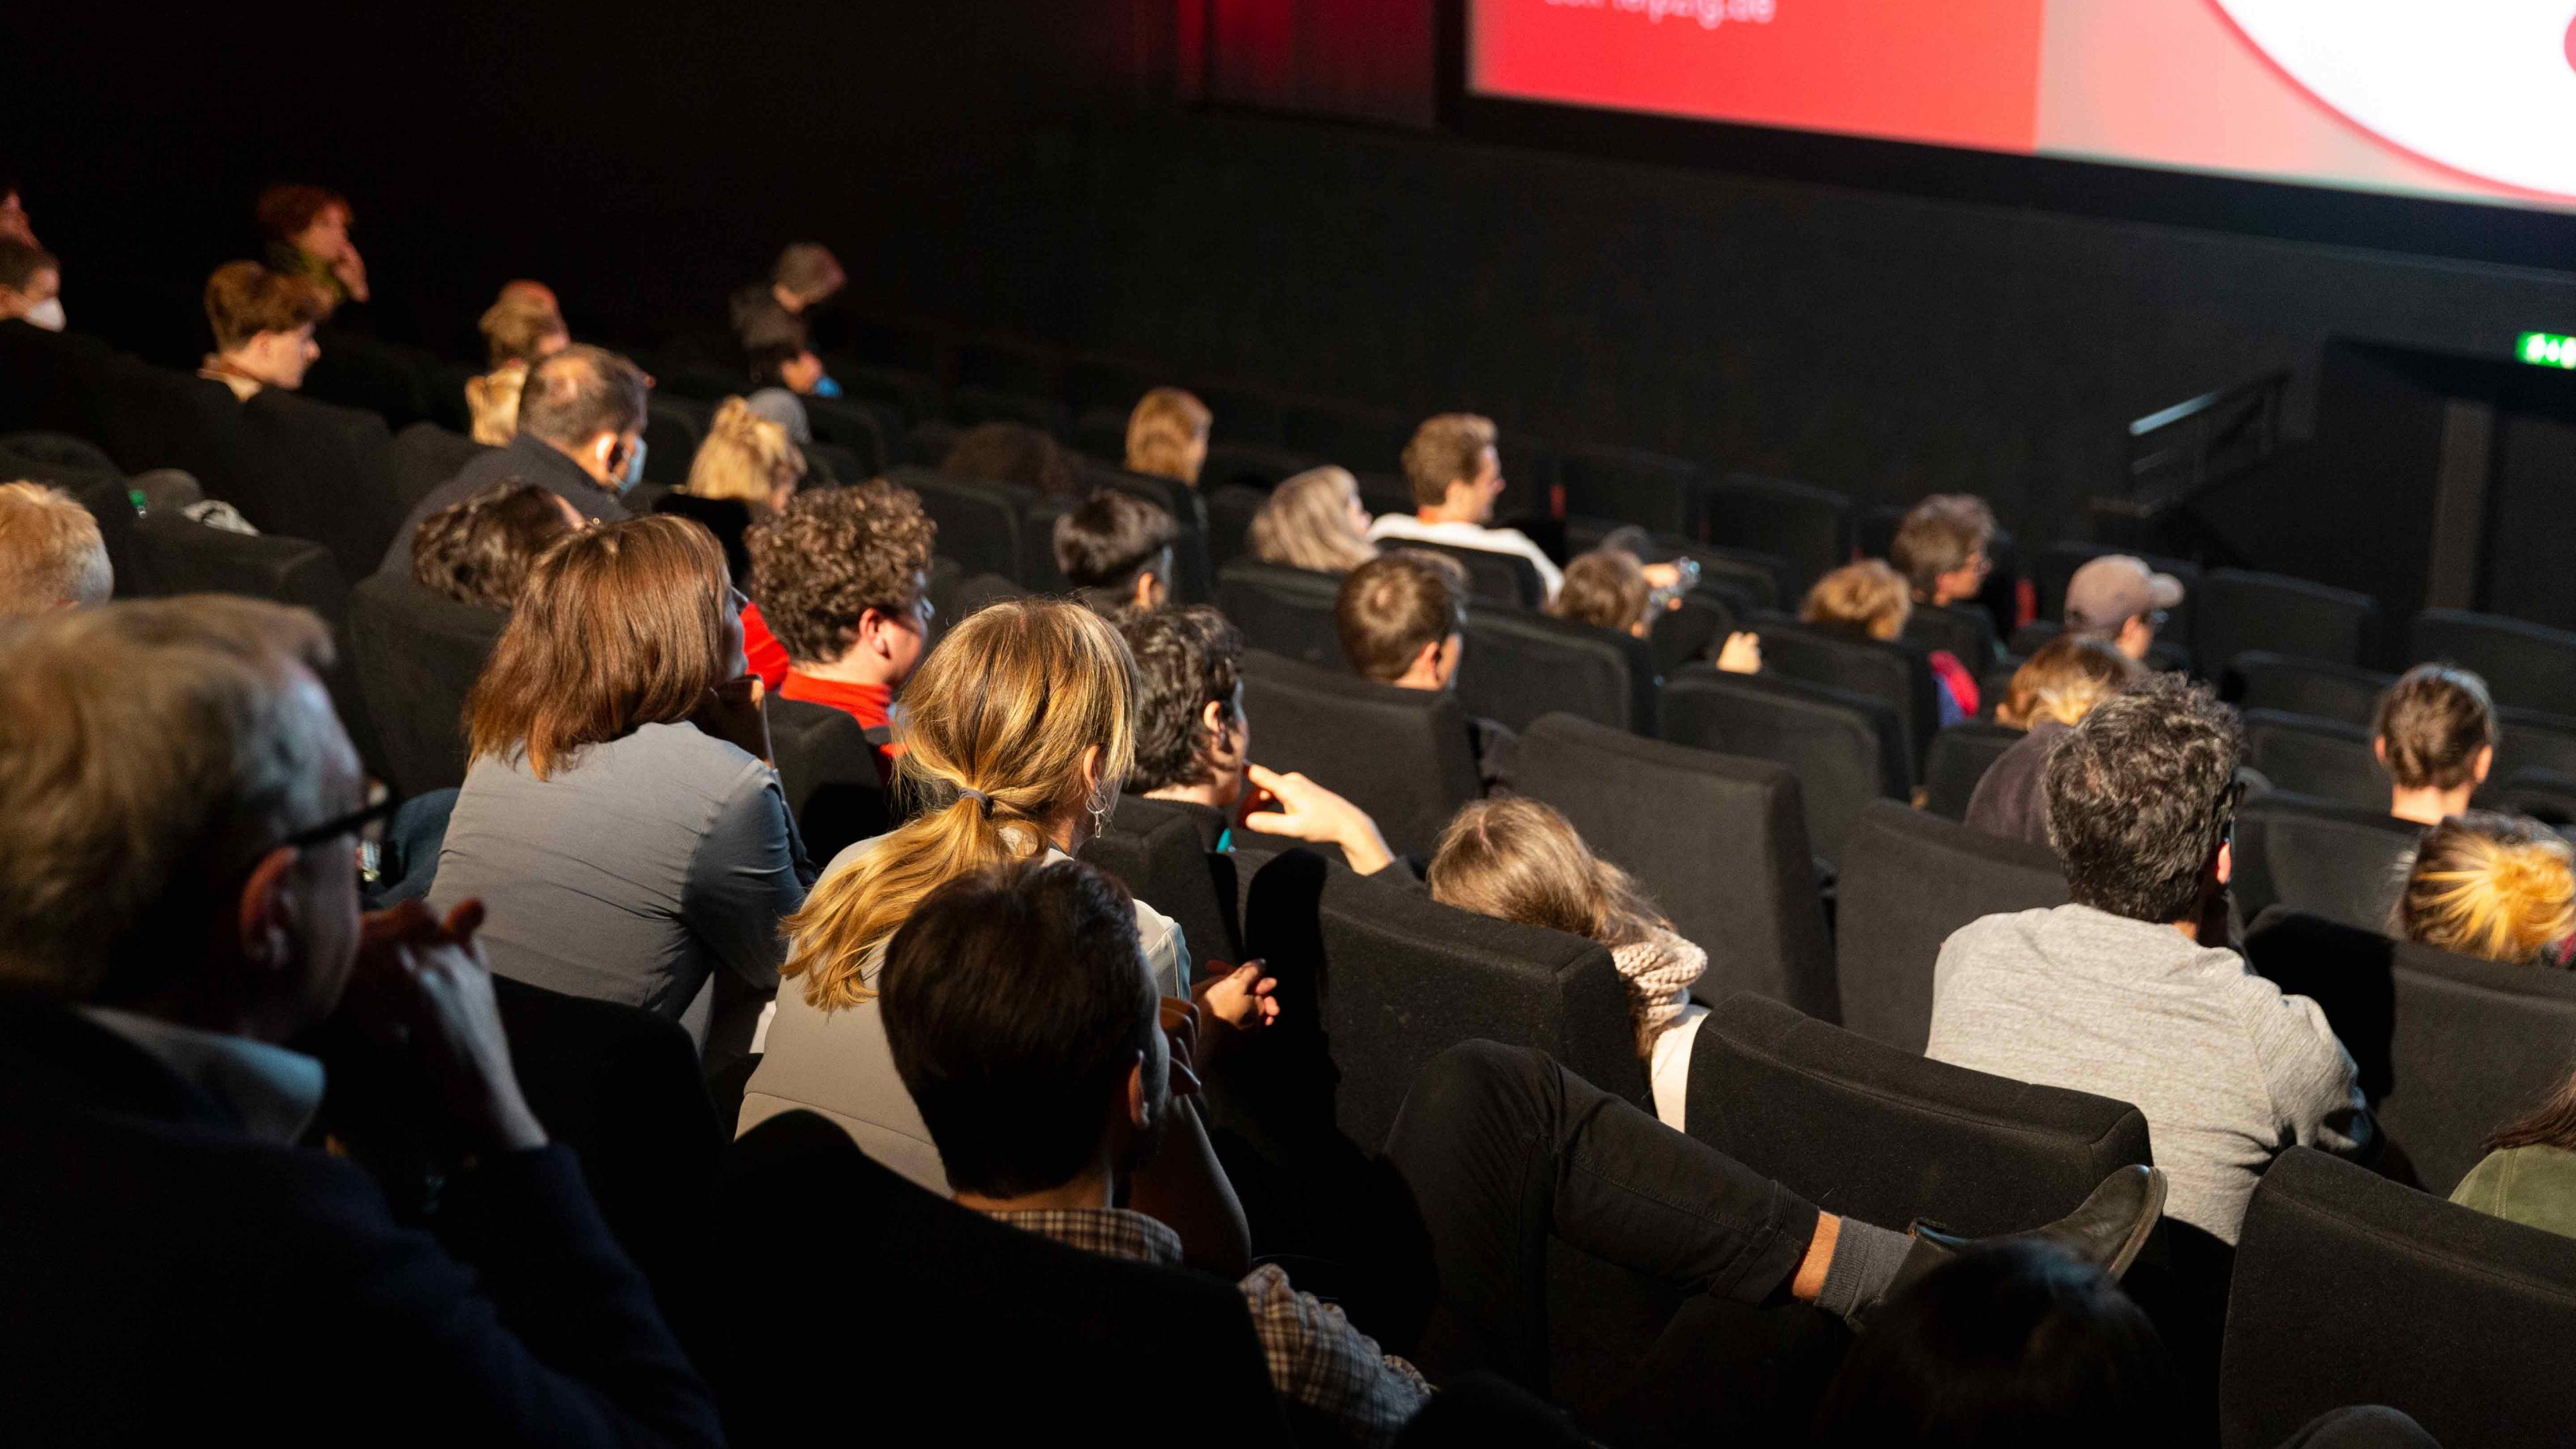 Ein Kinosaal bei einer Festivalvorführung: Blick über gut gefüllte Zuschauerreihen Richtung Leinwand. Viele Zuschauer*innen lehnen sich interessiert nach vorne.